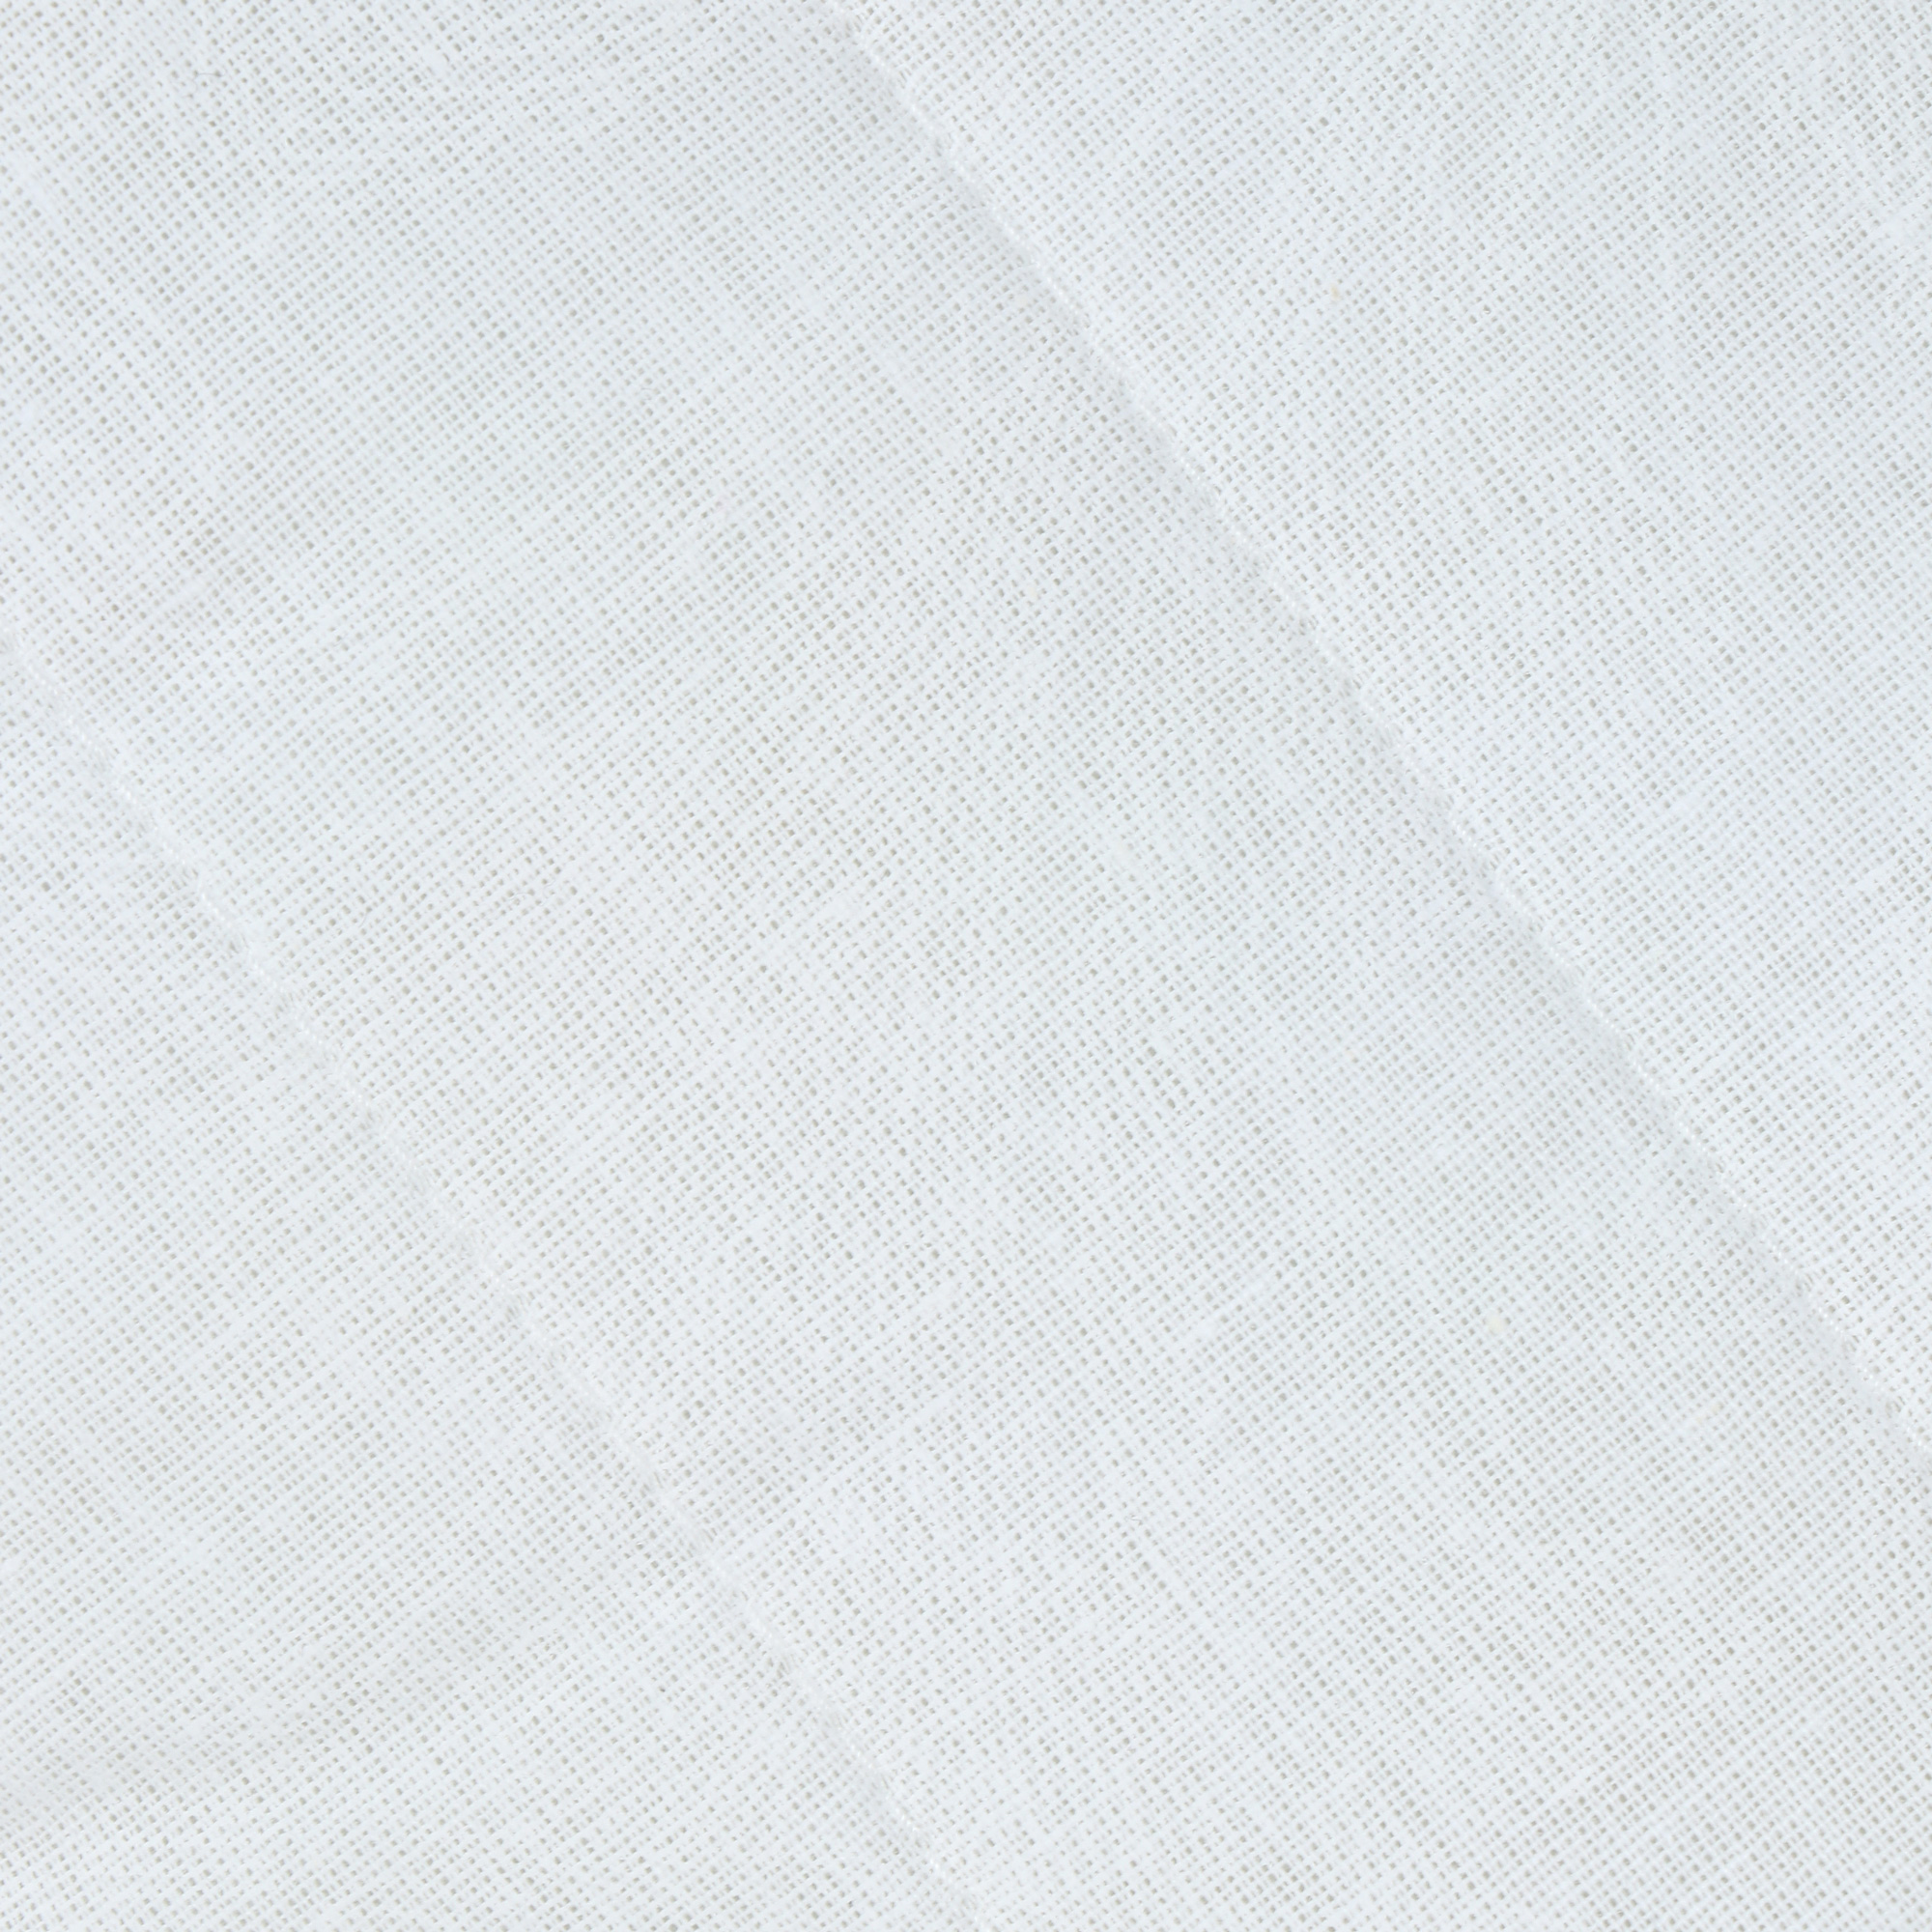 Подушка Medsleep White Cloud белая 50х70 см, цвет белый - фото 2